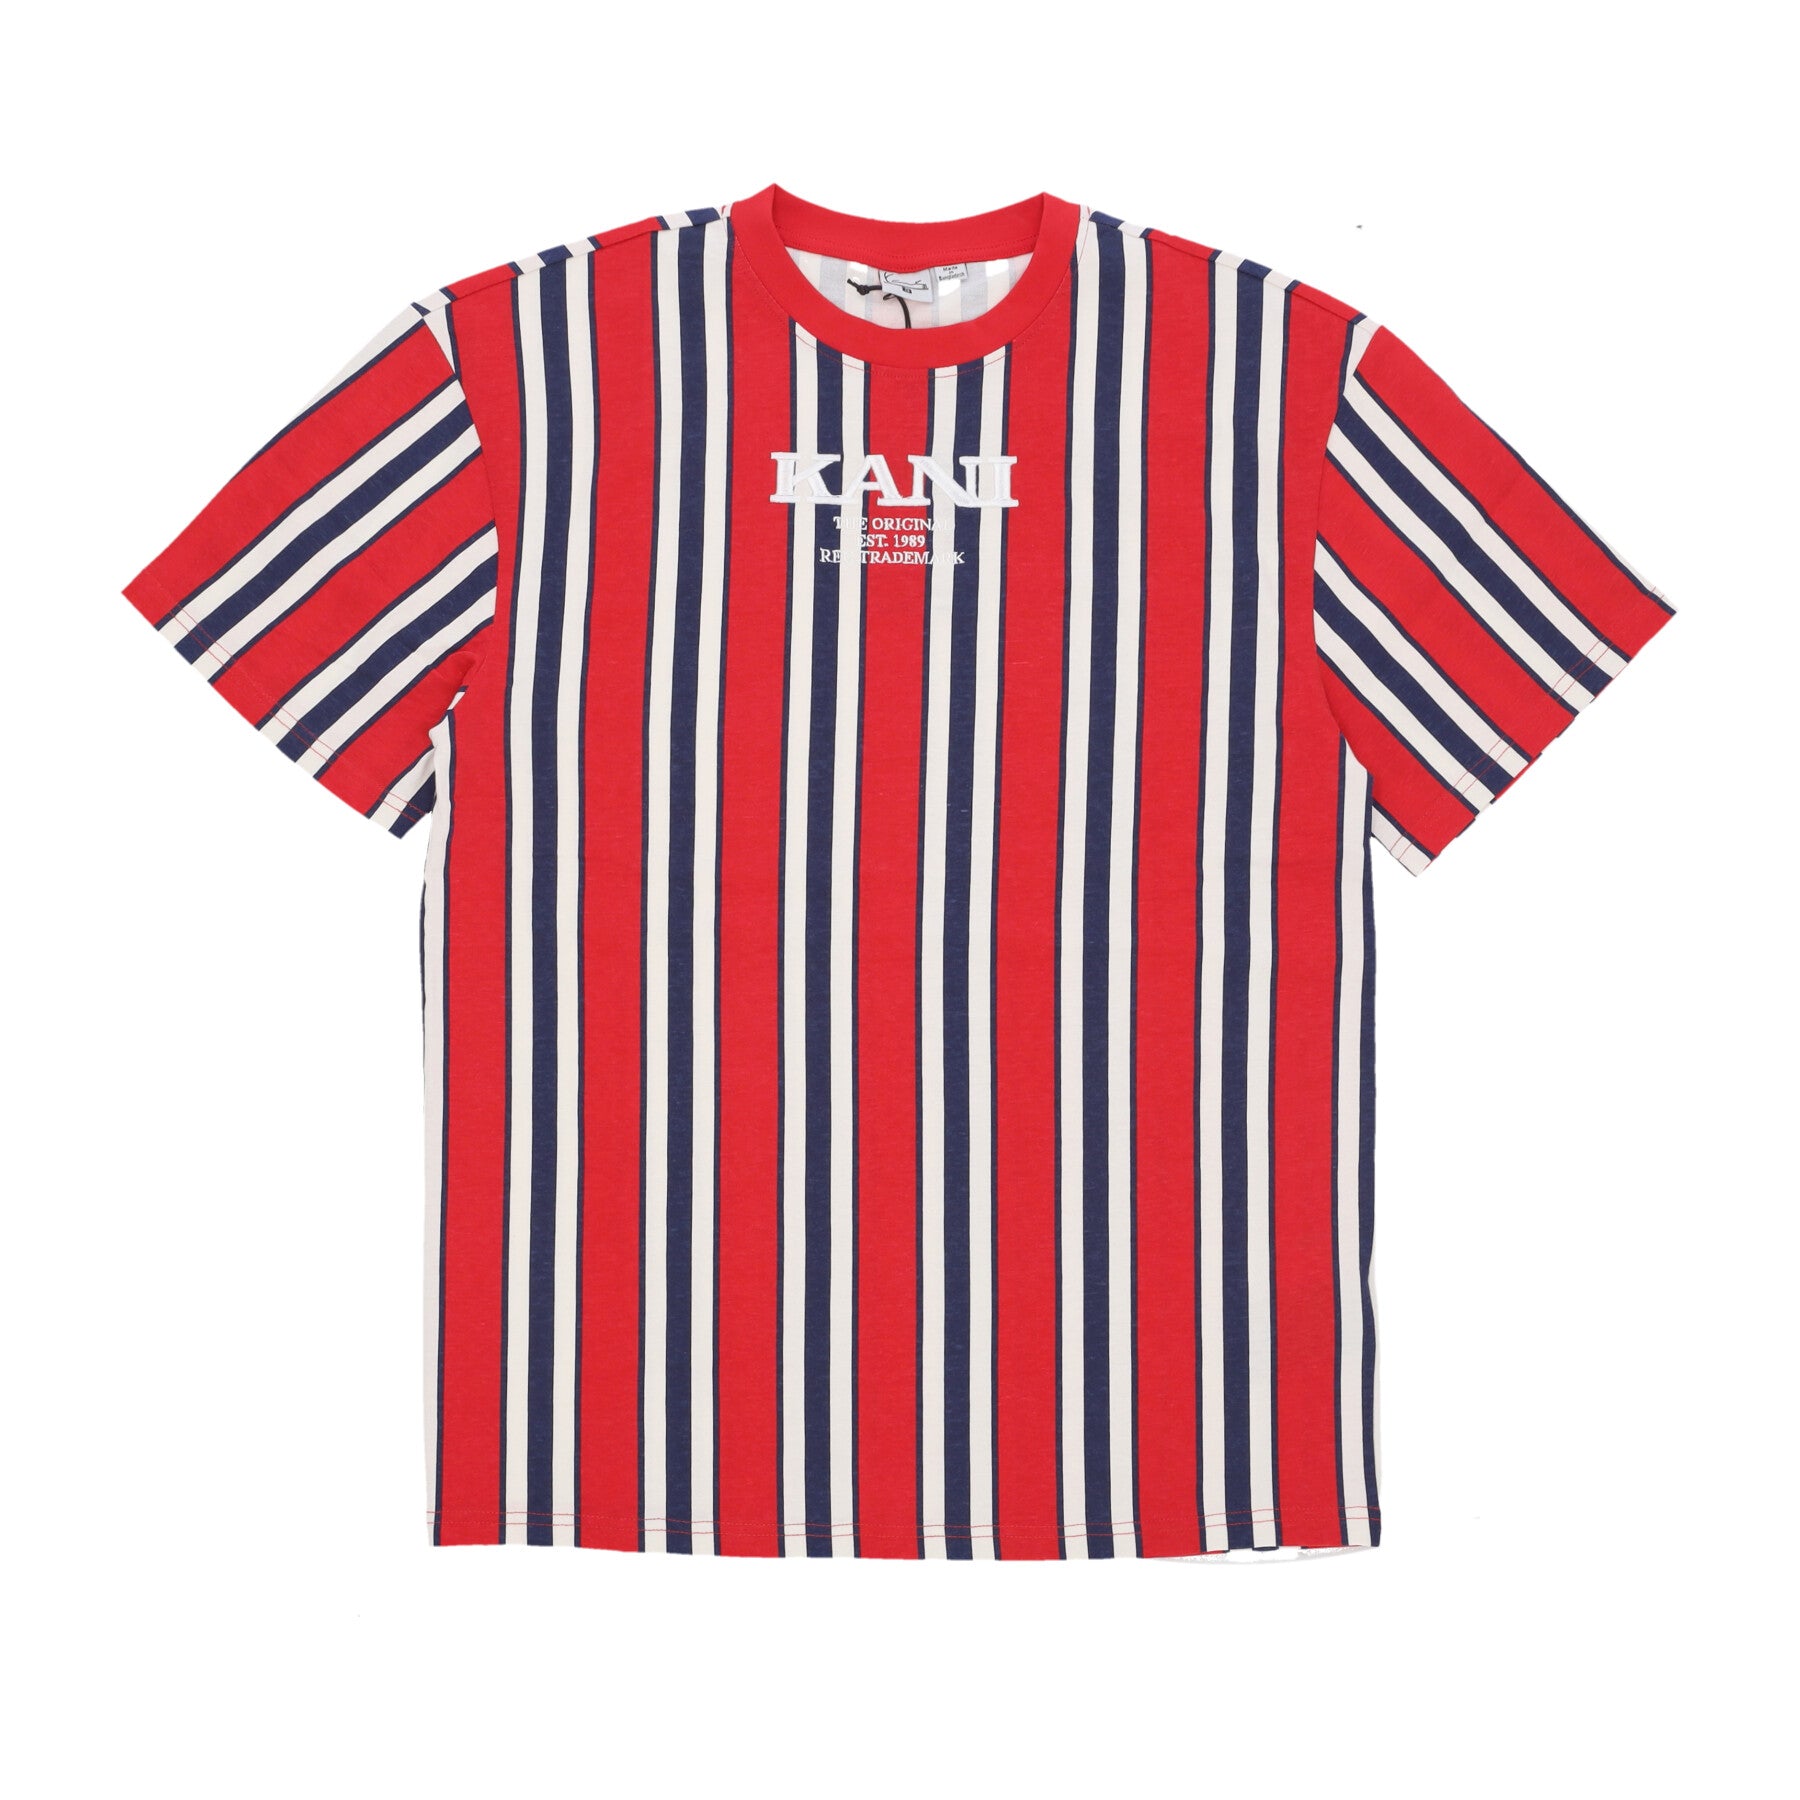 Maglietta Uomo Retro Striped Tee Red/navy/off White 6069093